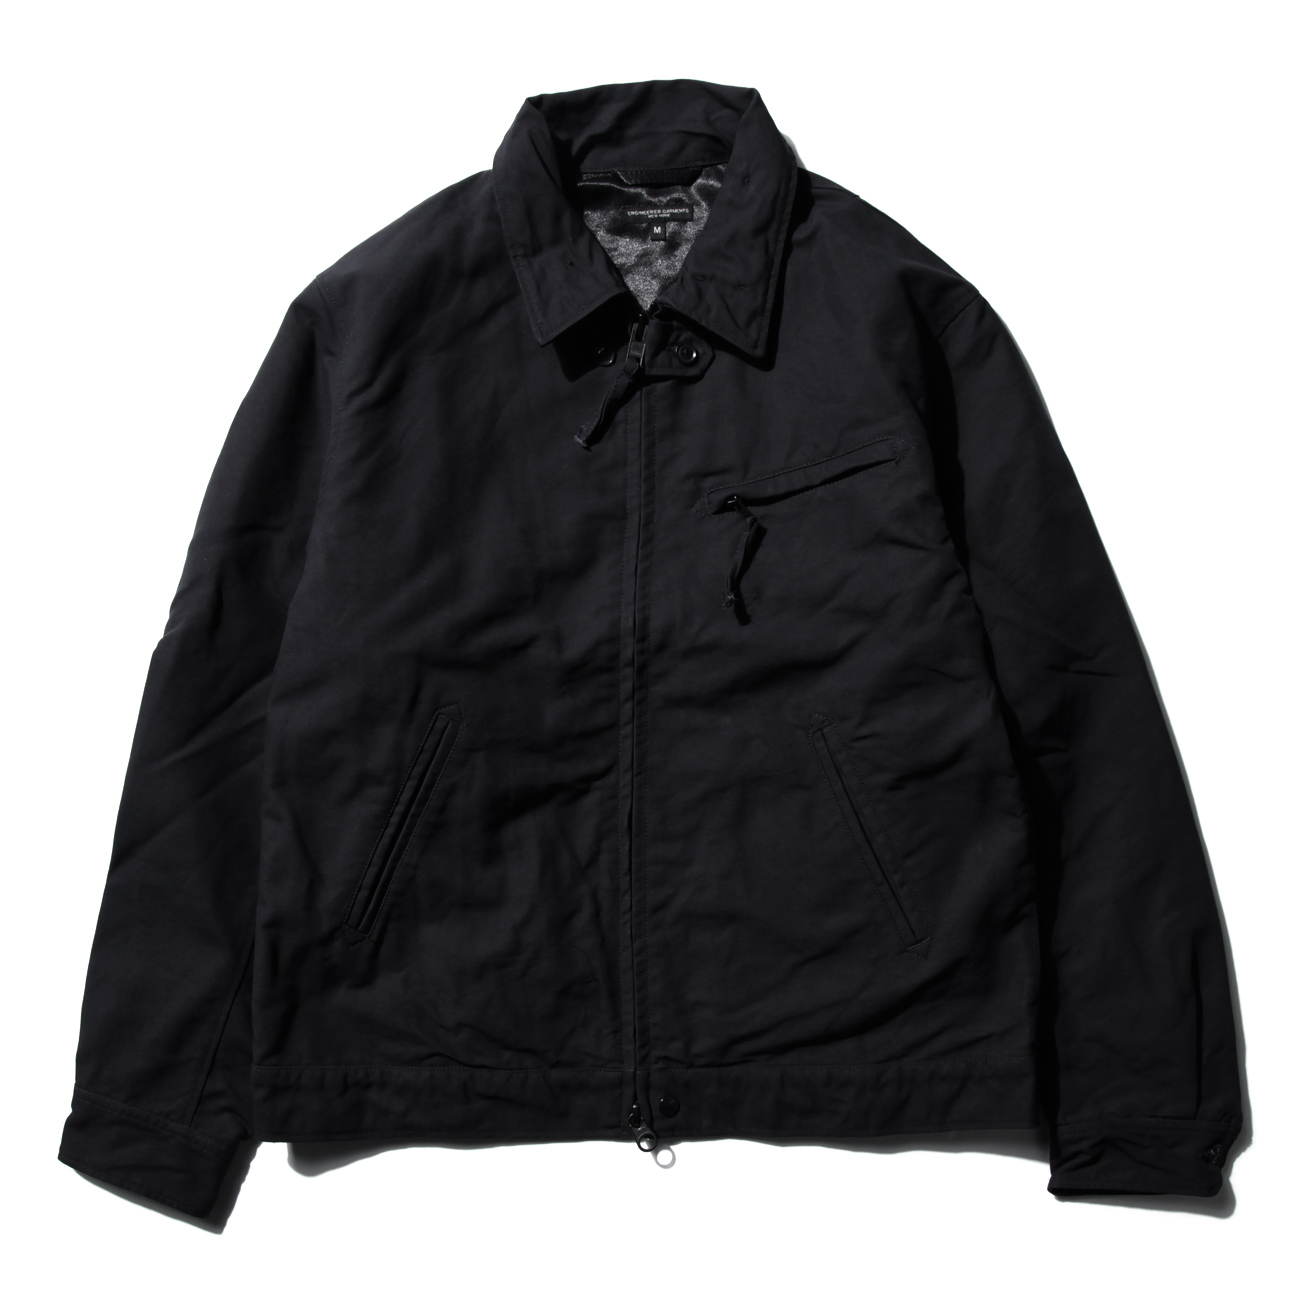 Driver Jacket - Cotton Double Cloth - Black